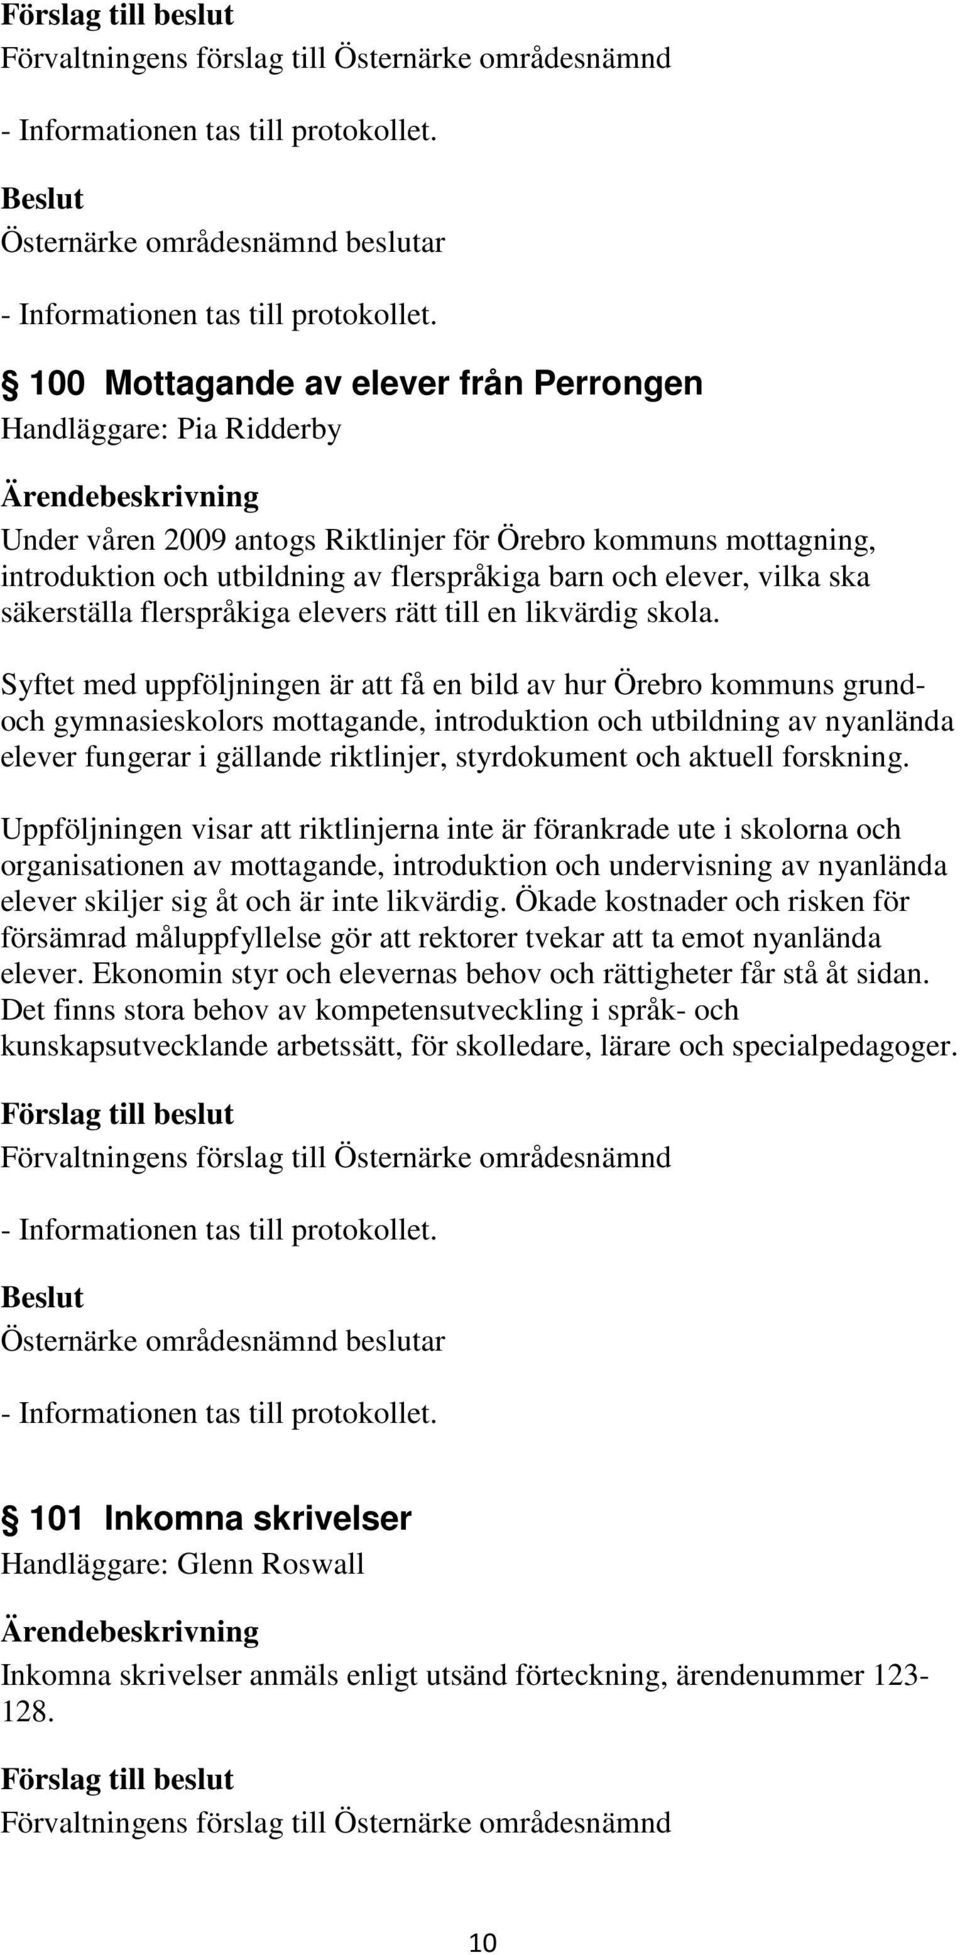 Syftet med uppföljningen är att få en bild av hur Örebro kommuns grundoch gymnasieskolors mottagande, introduktion och utbildning av nyanlända elever fungerar i gällande riktlinjer, styrdokument och